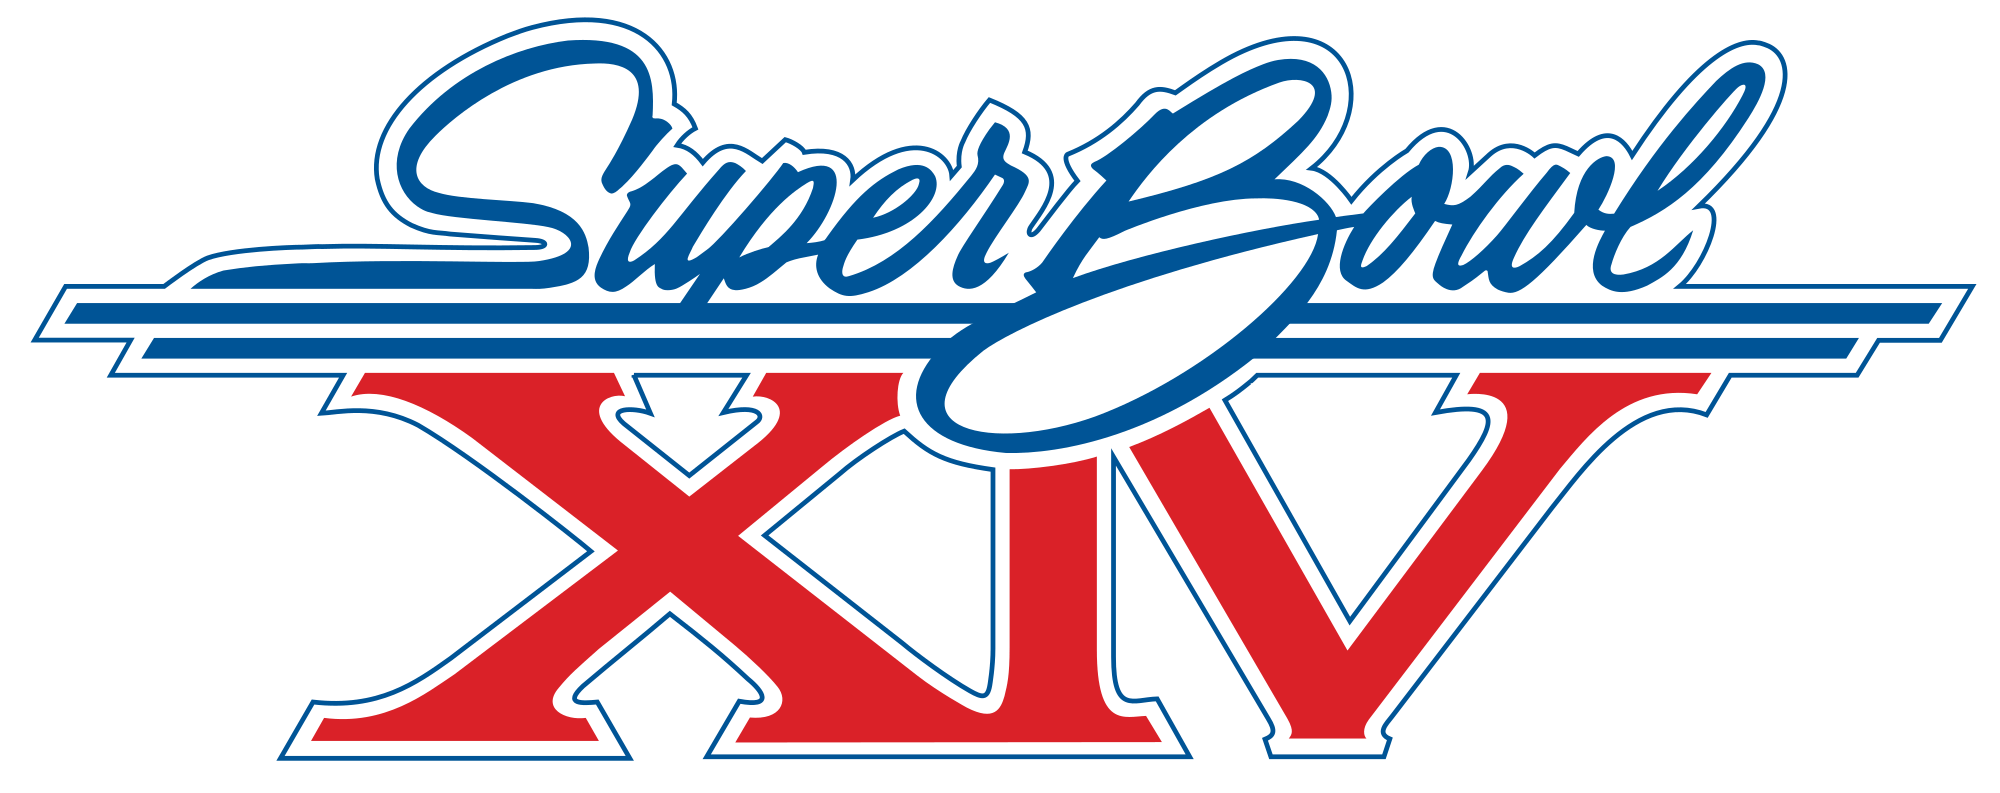 XIV Logo - Super Bowl XIV Logo.svg